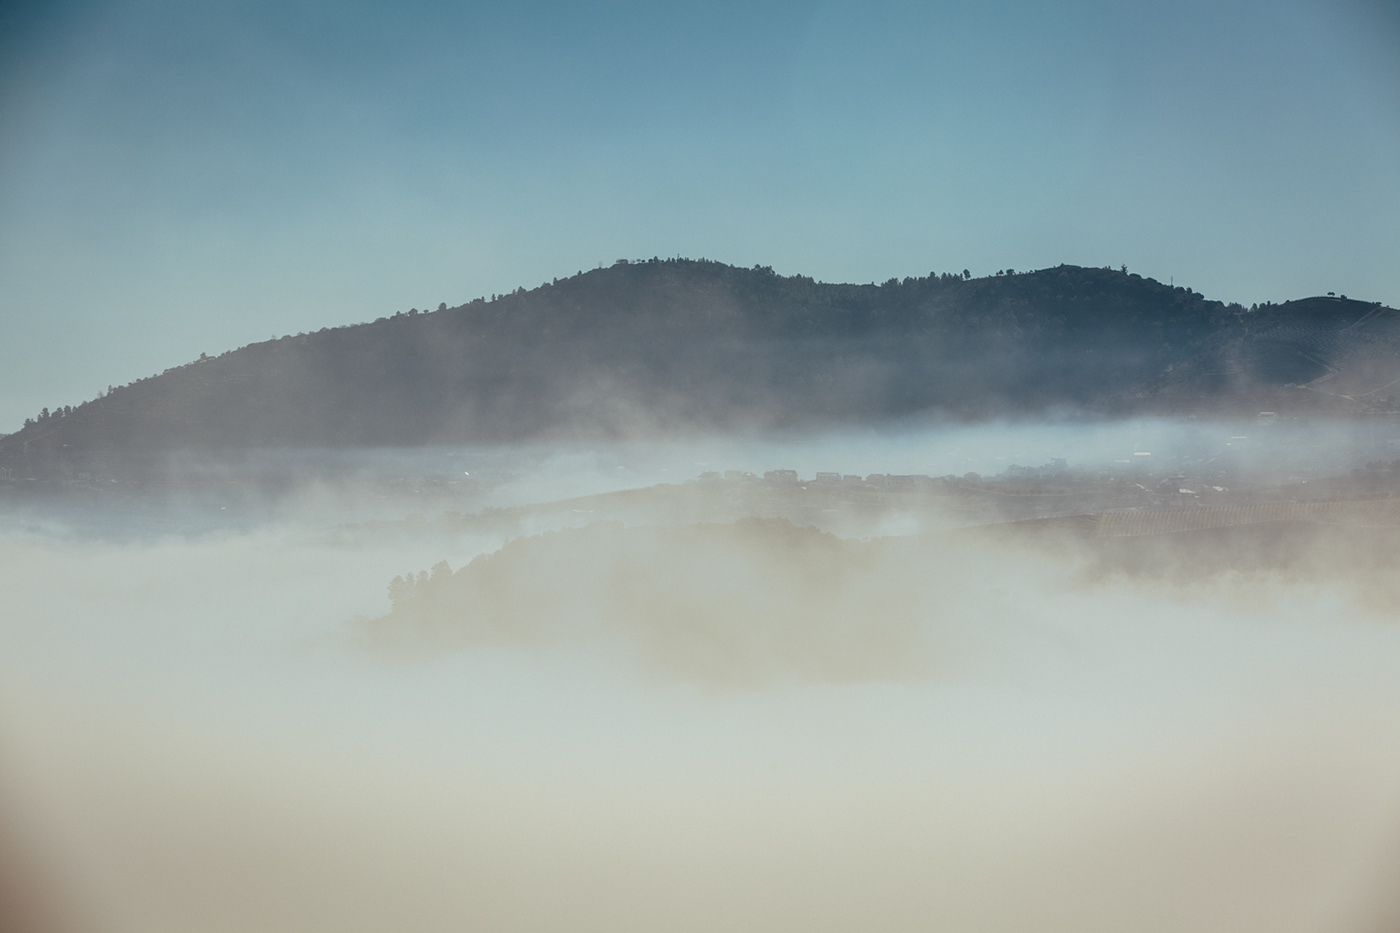 alvaro martino landscapes Alijó Portugal paisagens fog nevoeiro Douro Sun clouds